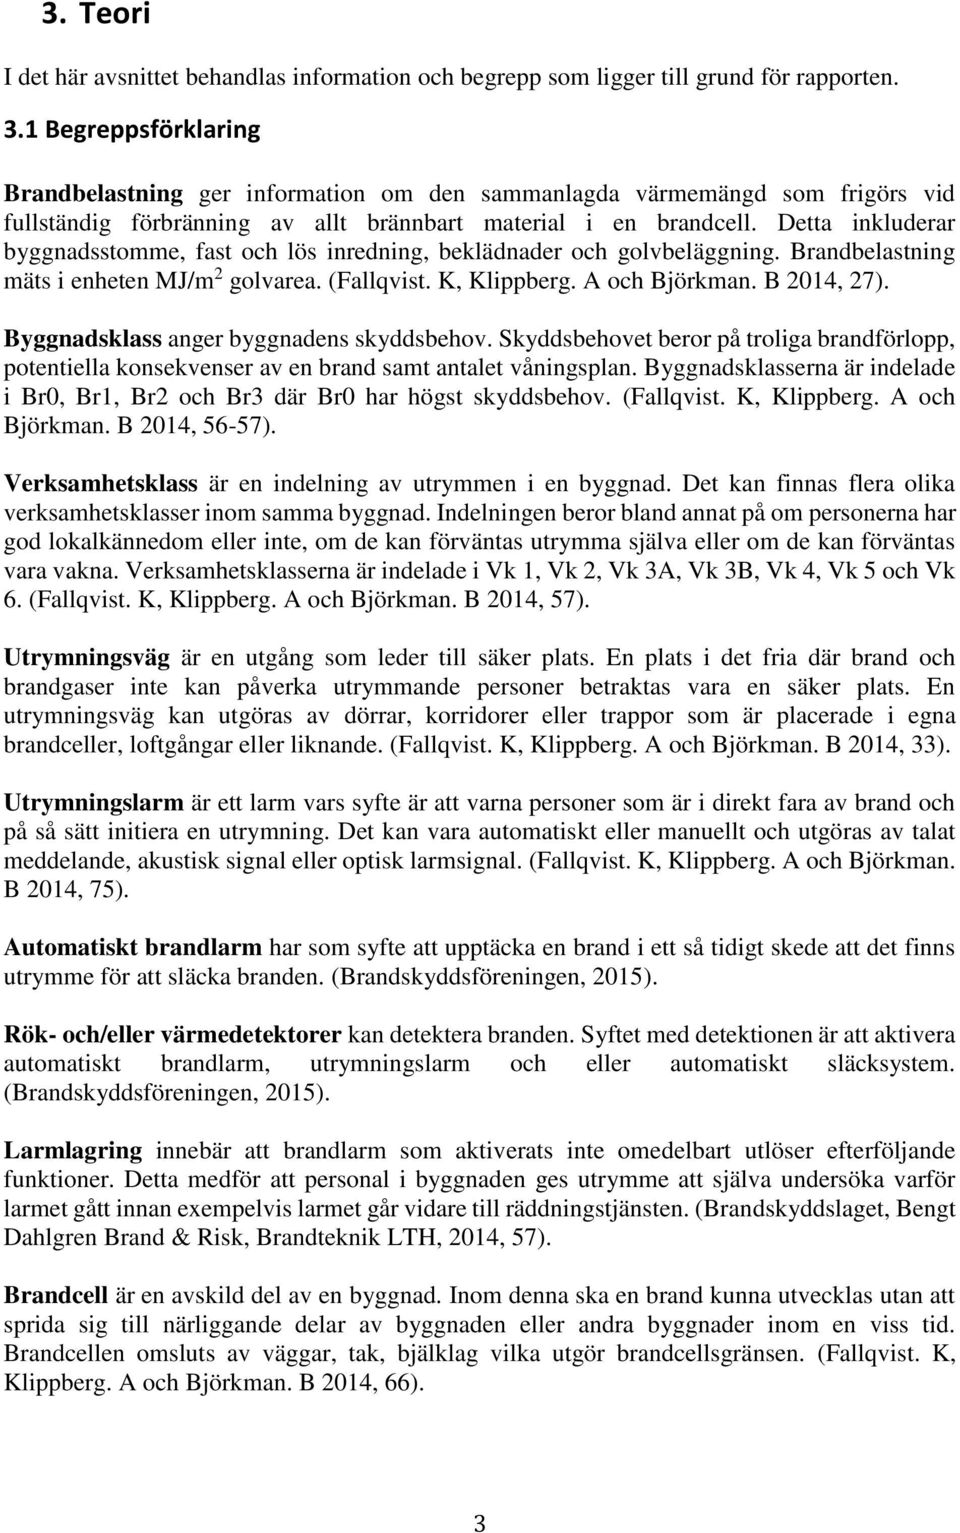 Detta inkluderar byggnadsstomme, fast och lös inredning, beklädnader och golvbeläggning. Brandbelastning mäts i enheten MJ/m 2 golvarea. (Fallqvist. K, Klippberg. A och Björkman. B 2014, 27).